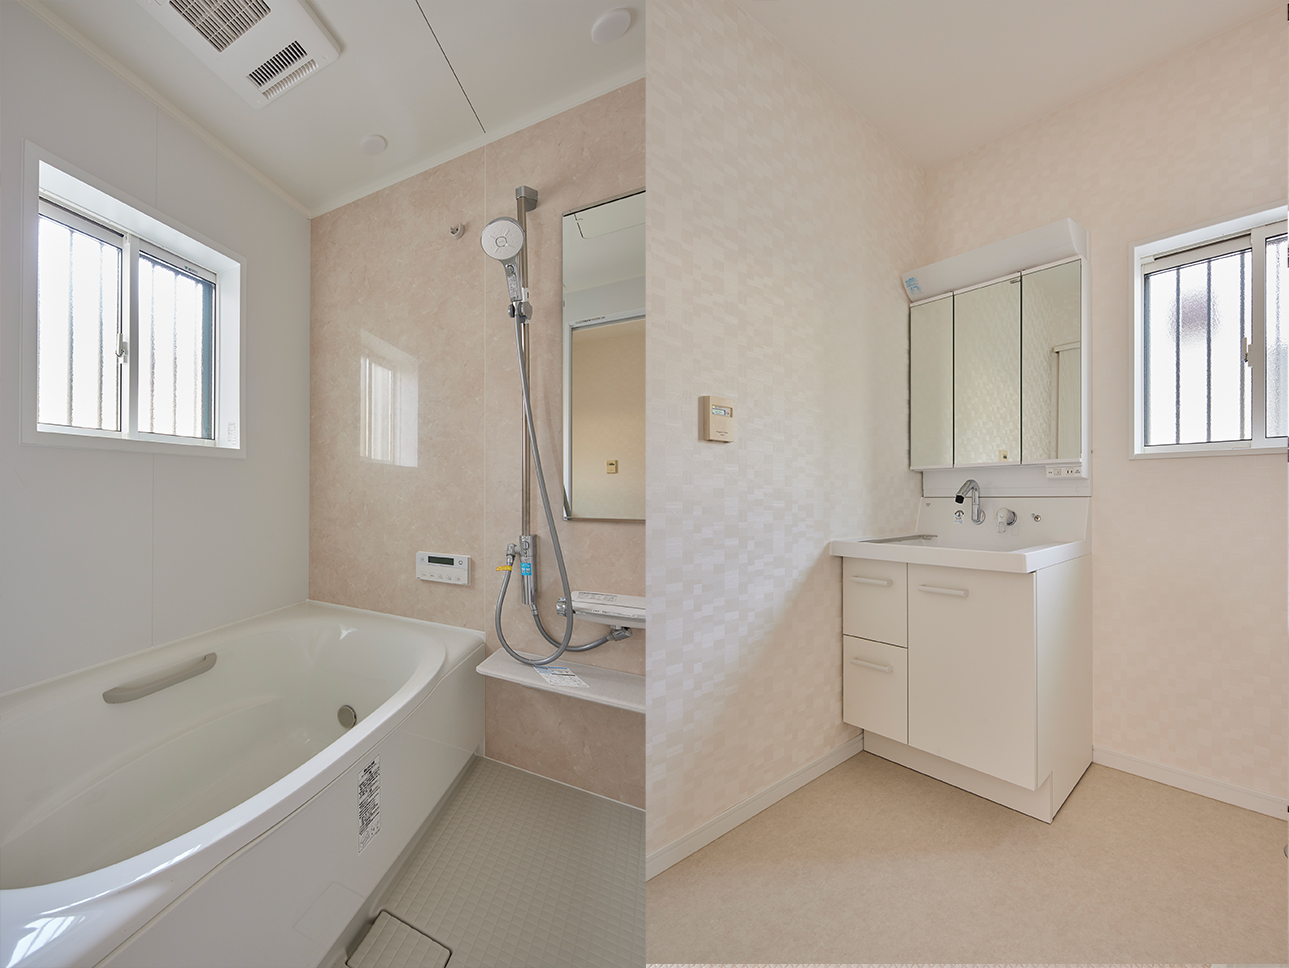 戸建住宅の浴室・洗面所をリフォーム・リノベーション